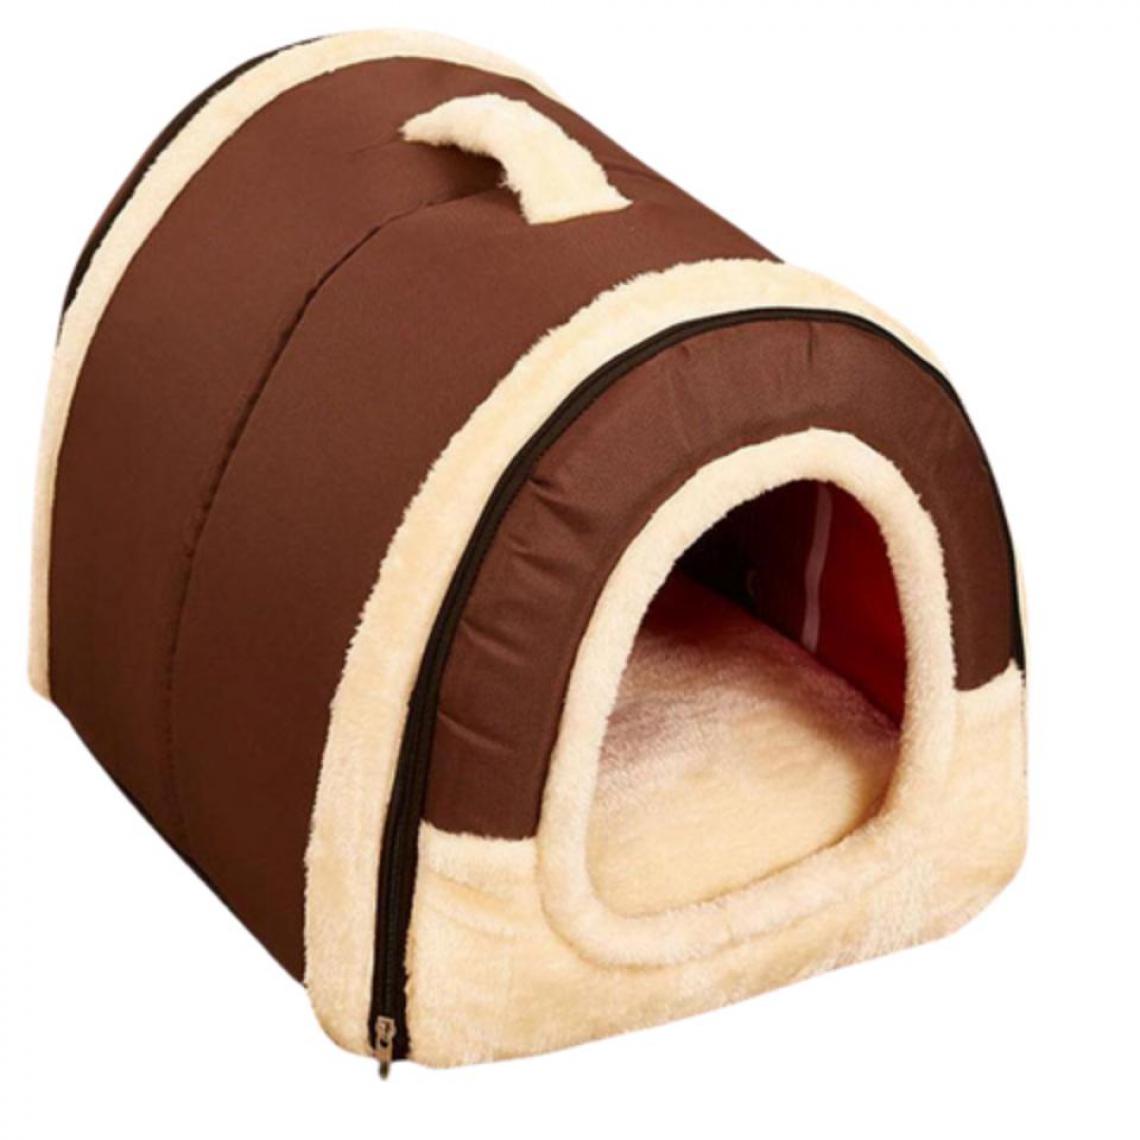 Justgreenbox - Lit de maison pour animaux de compagnie pour petits animaux, Coffee, M 45x35x35cM - Niche pour chien